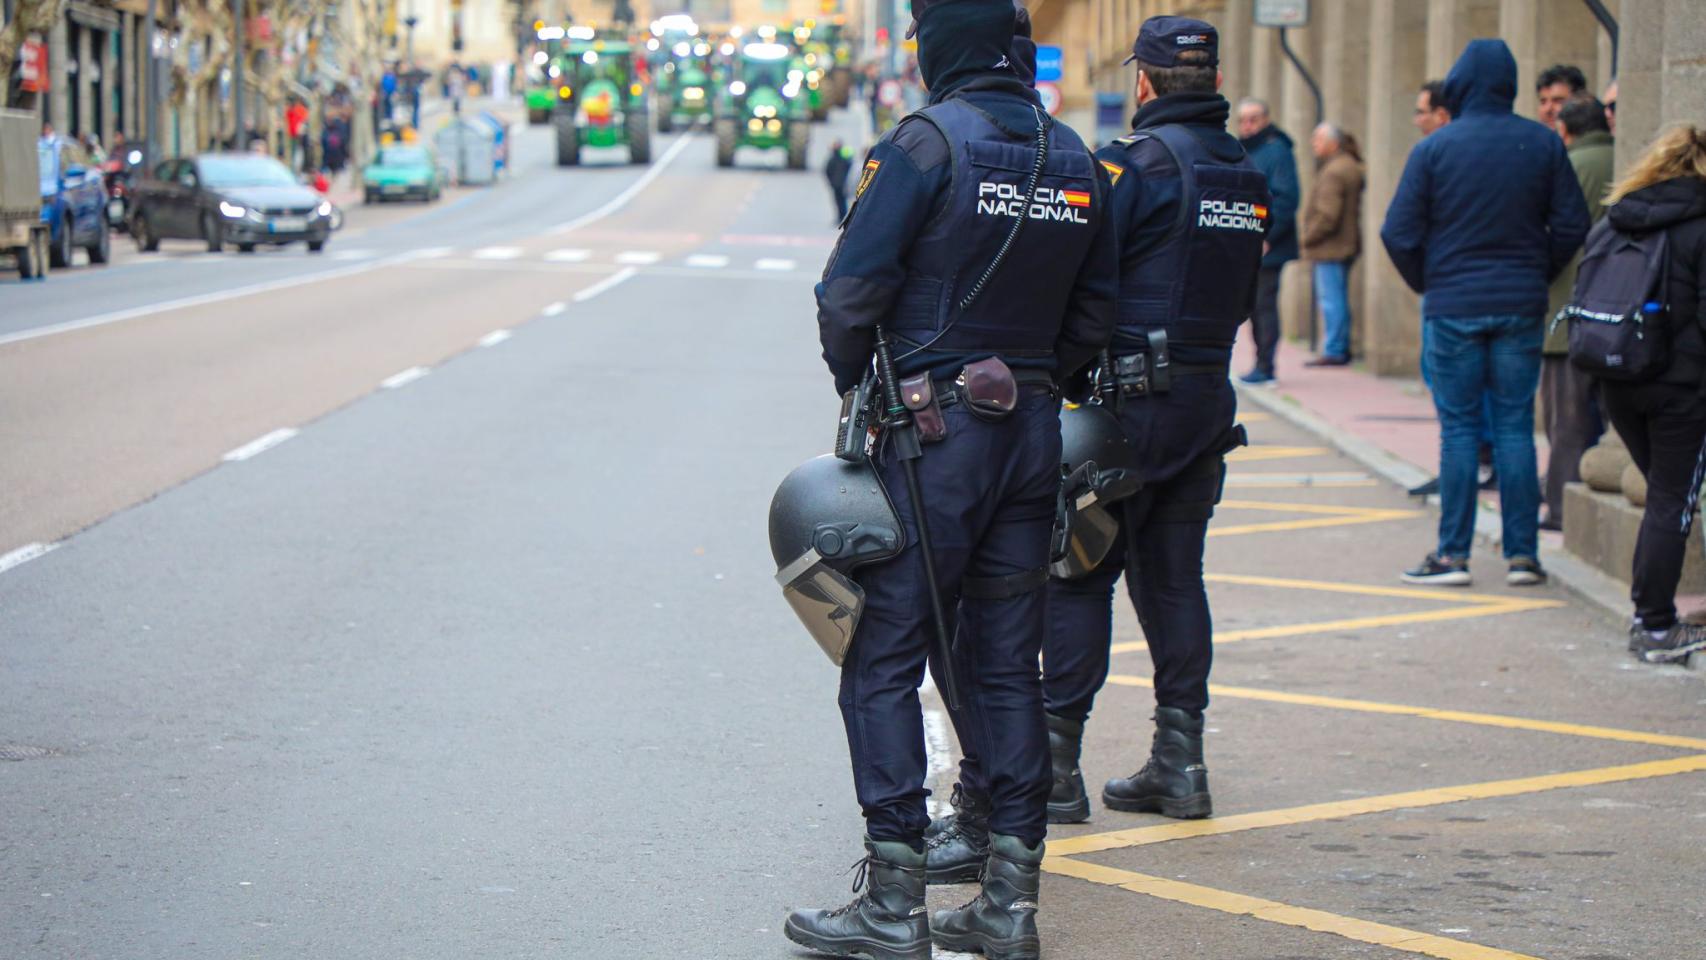 Policia Nacional de Salamanca